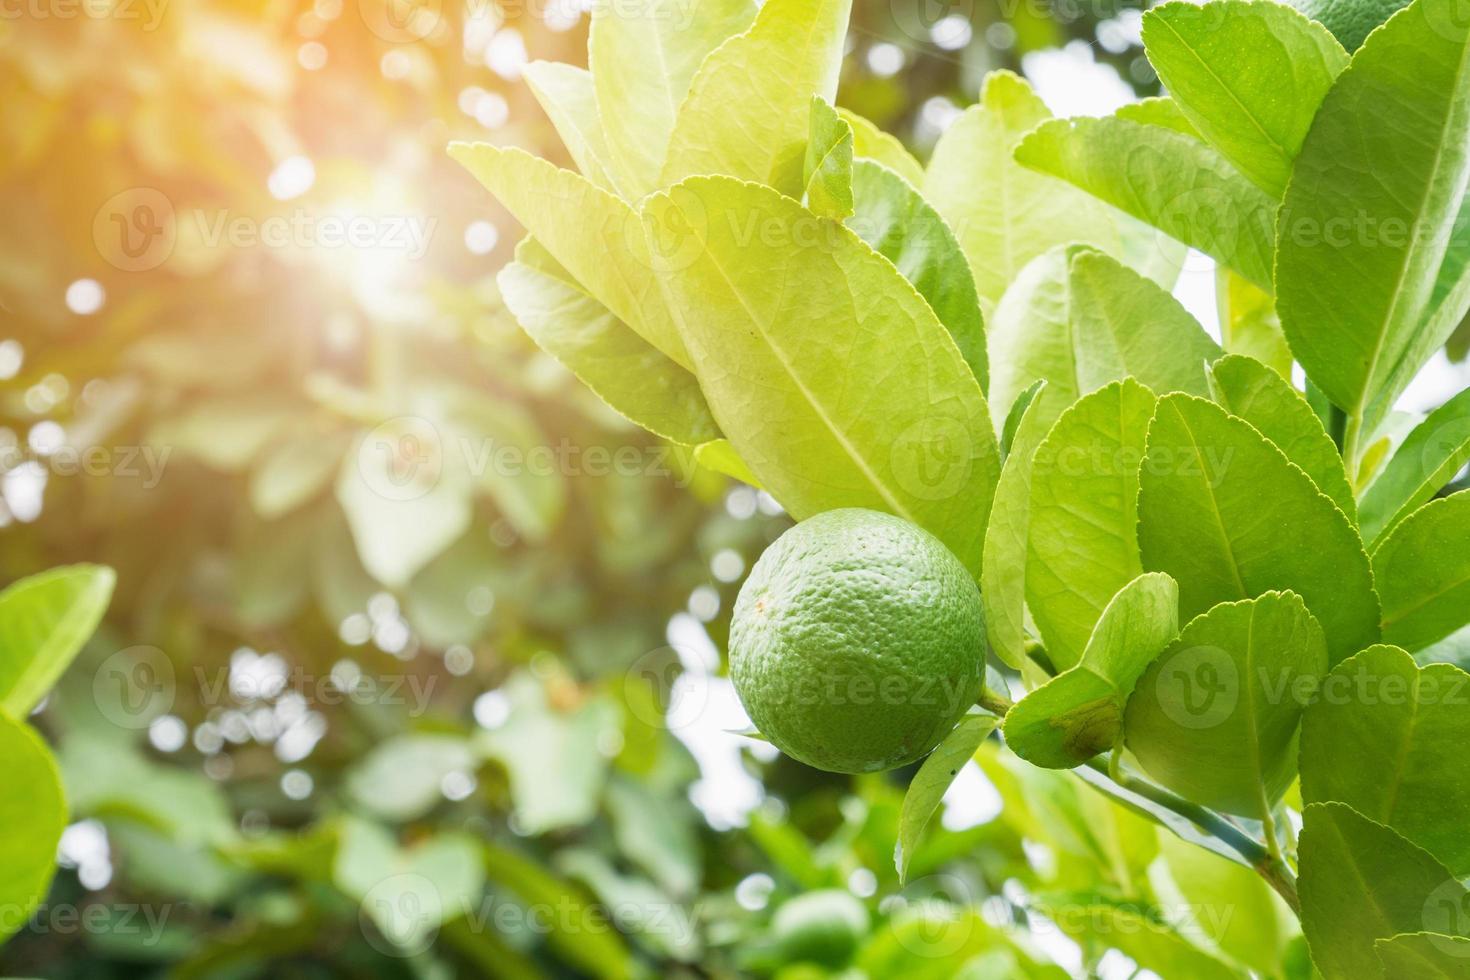 limas de limón verdes frescas en un árbol en un jardín orgánico foto